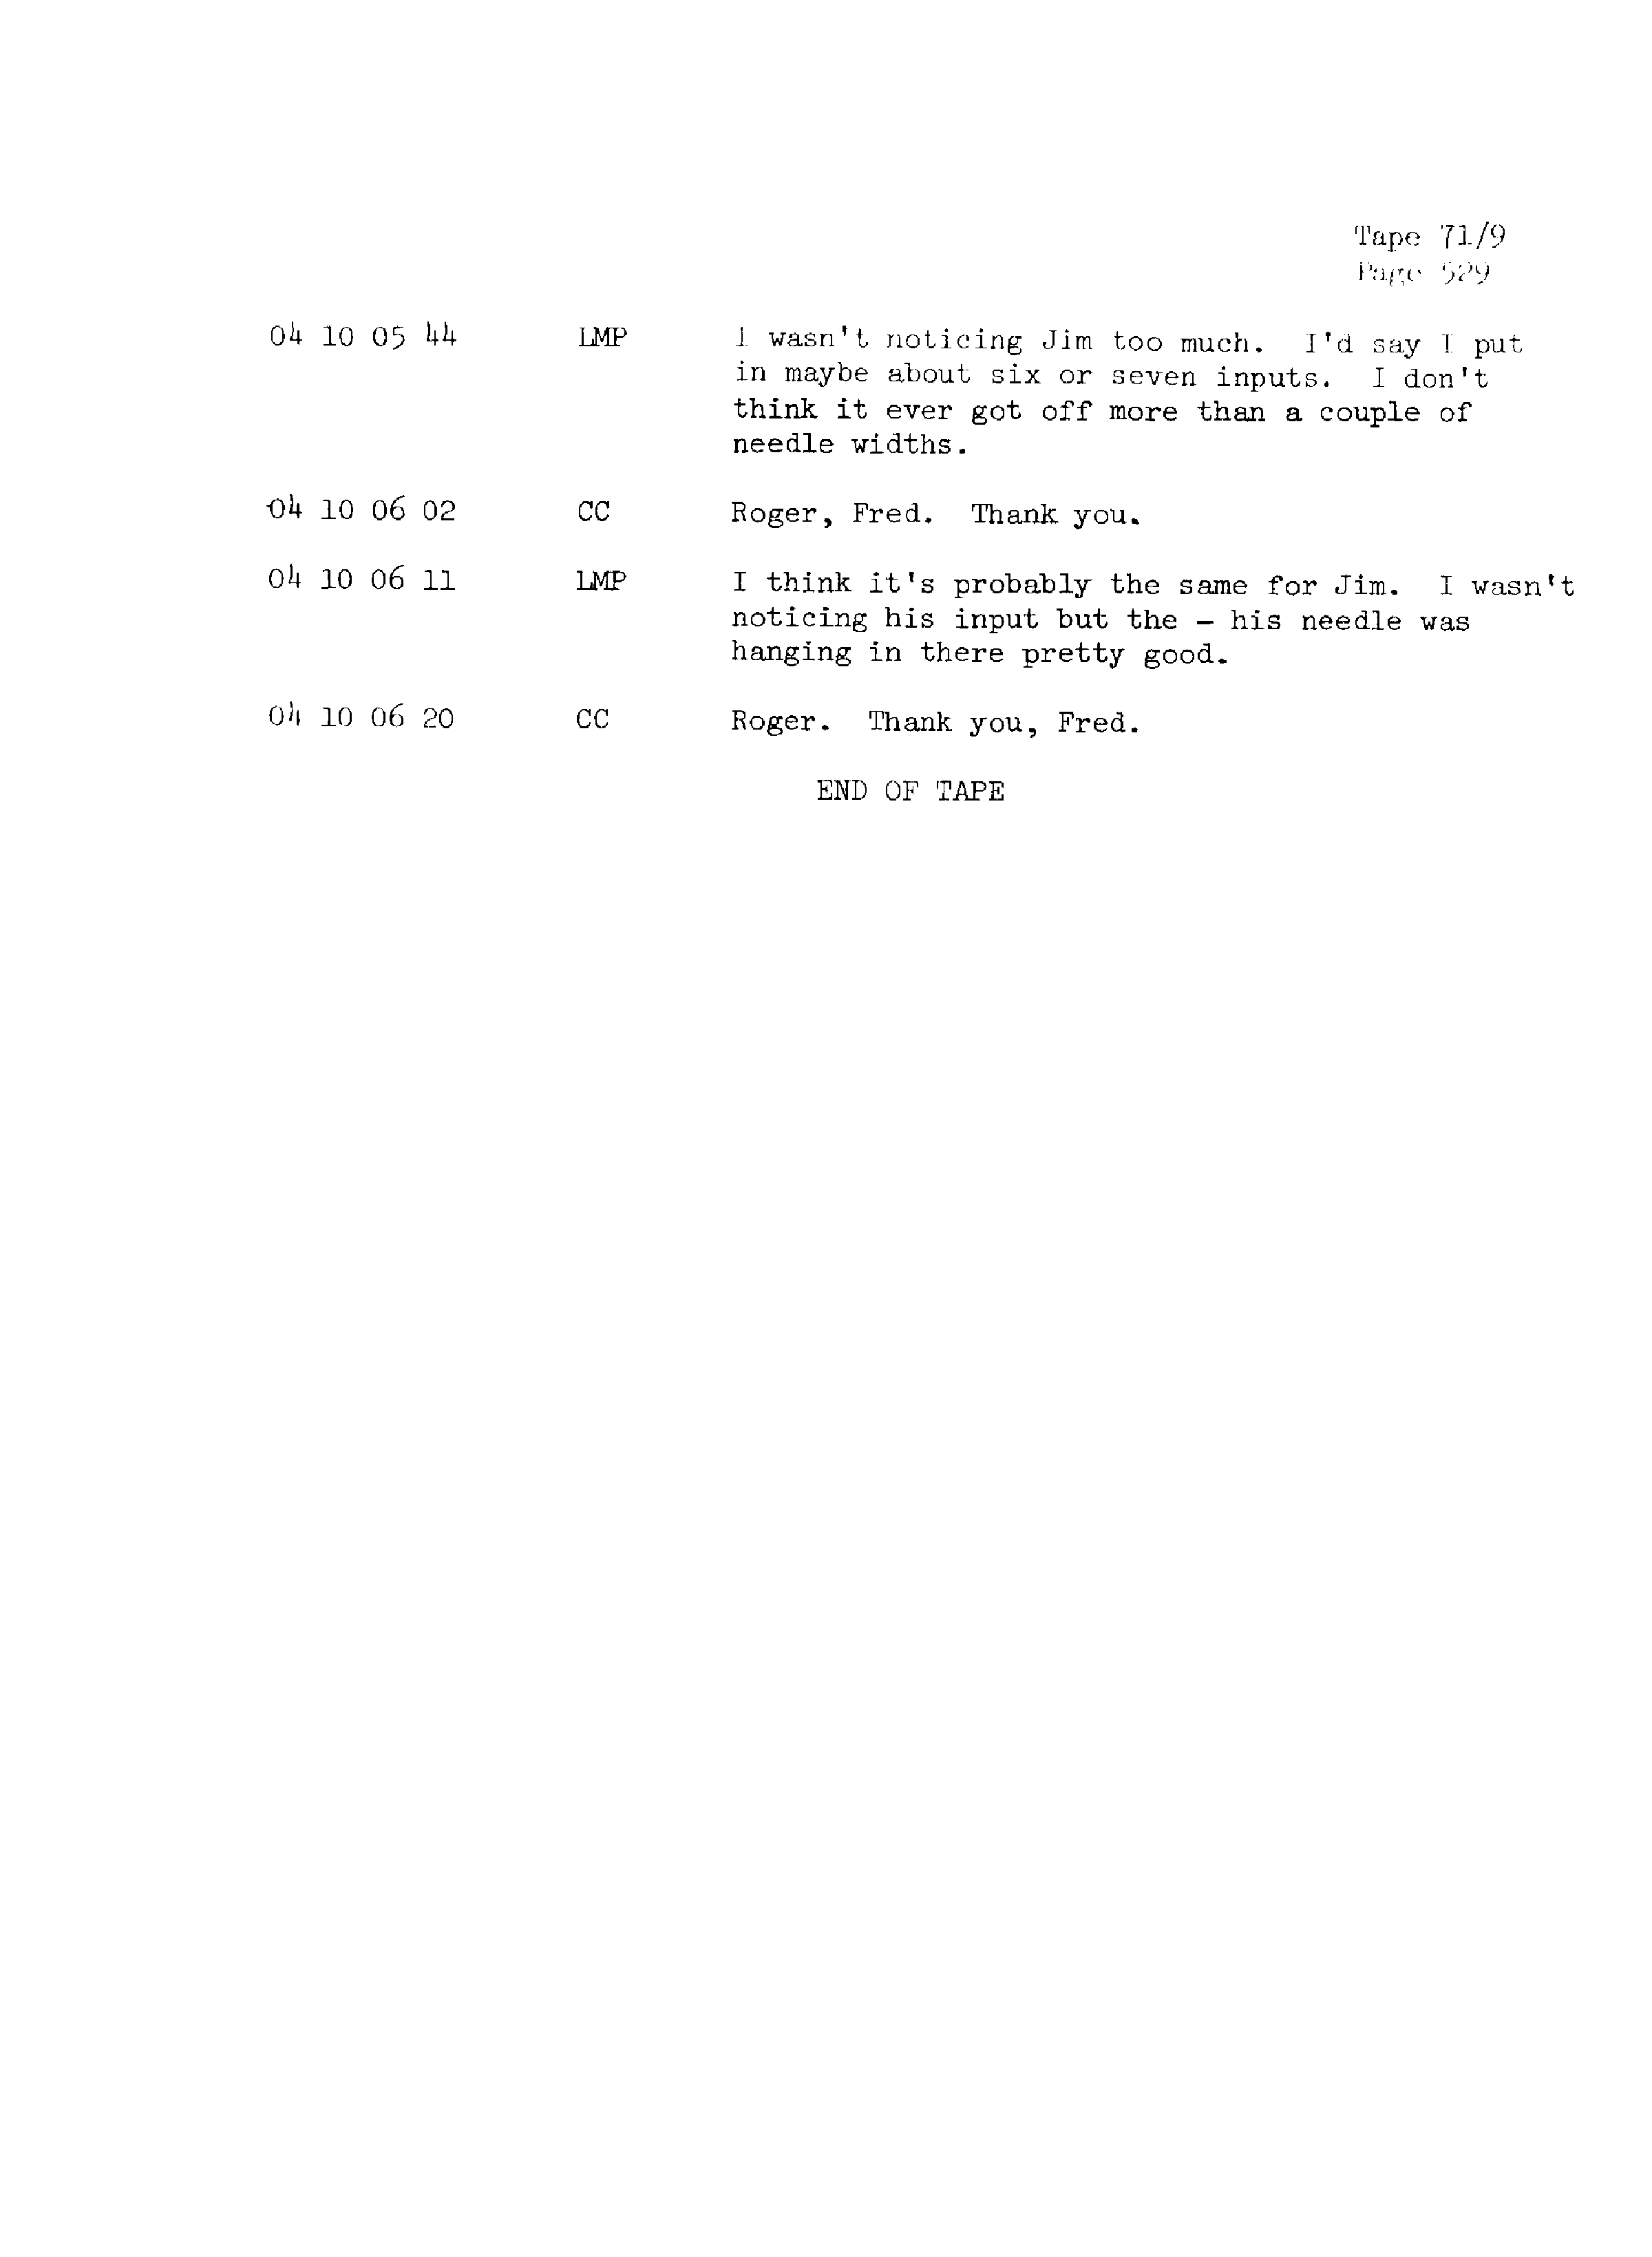 Page 536 of Apollo 13’s original transcript